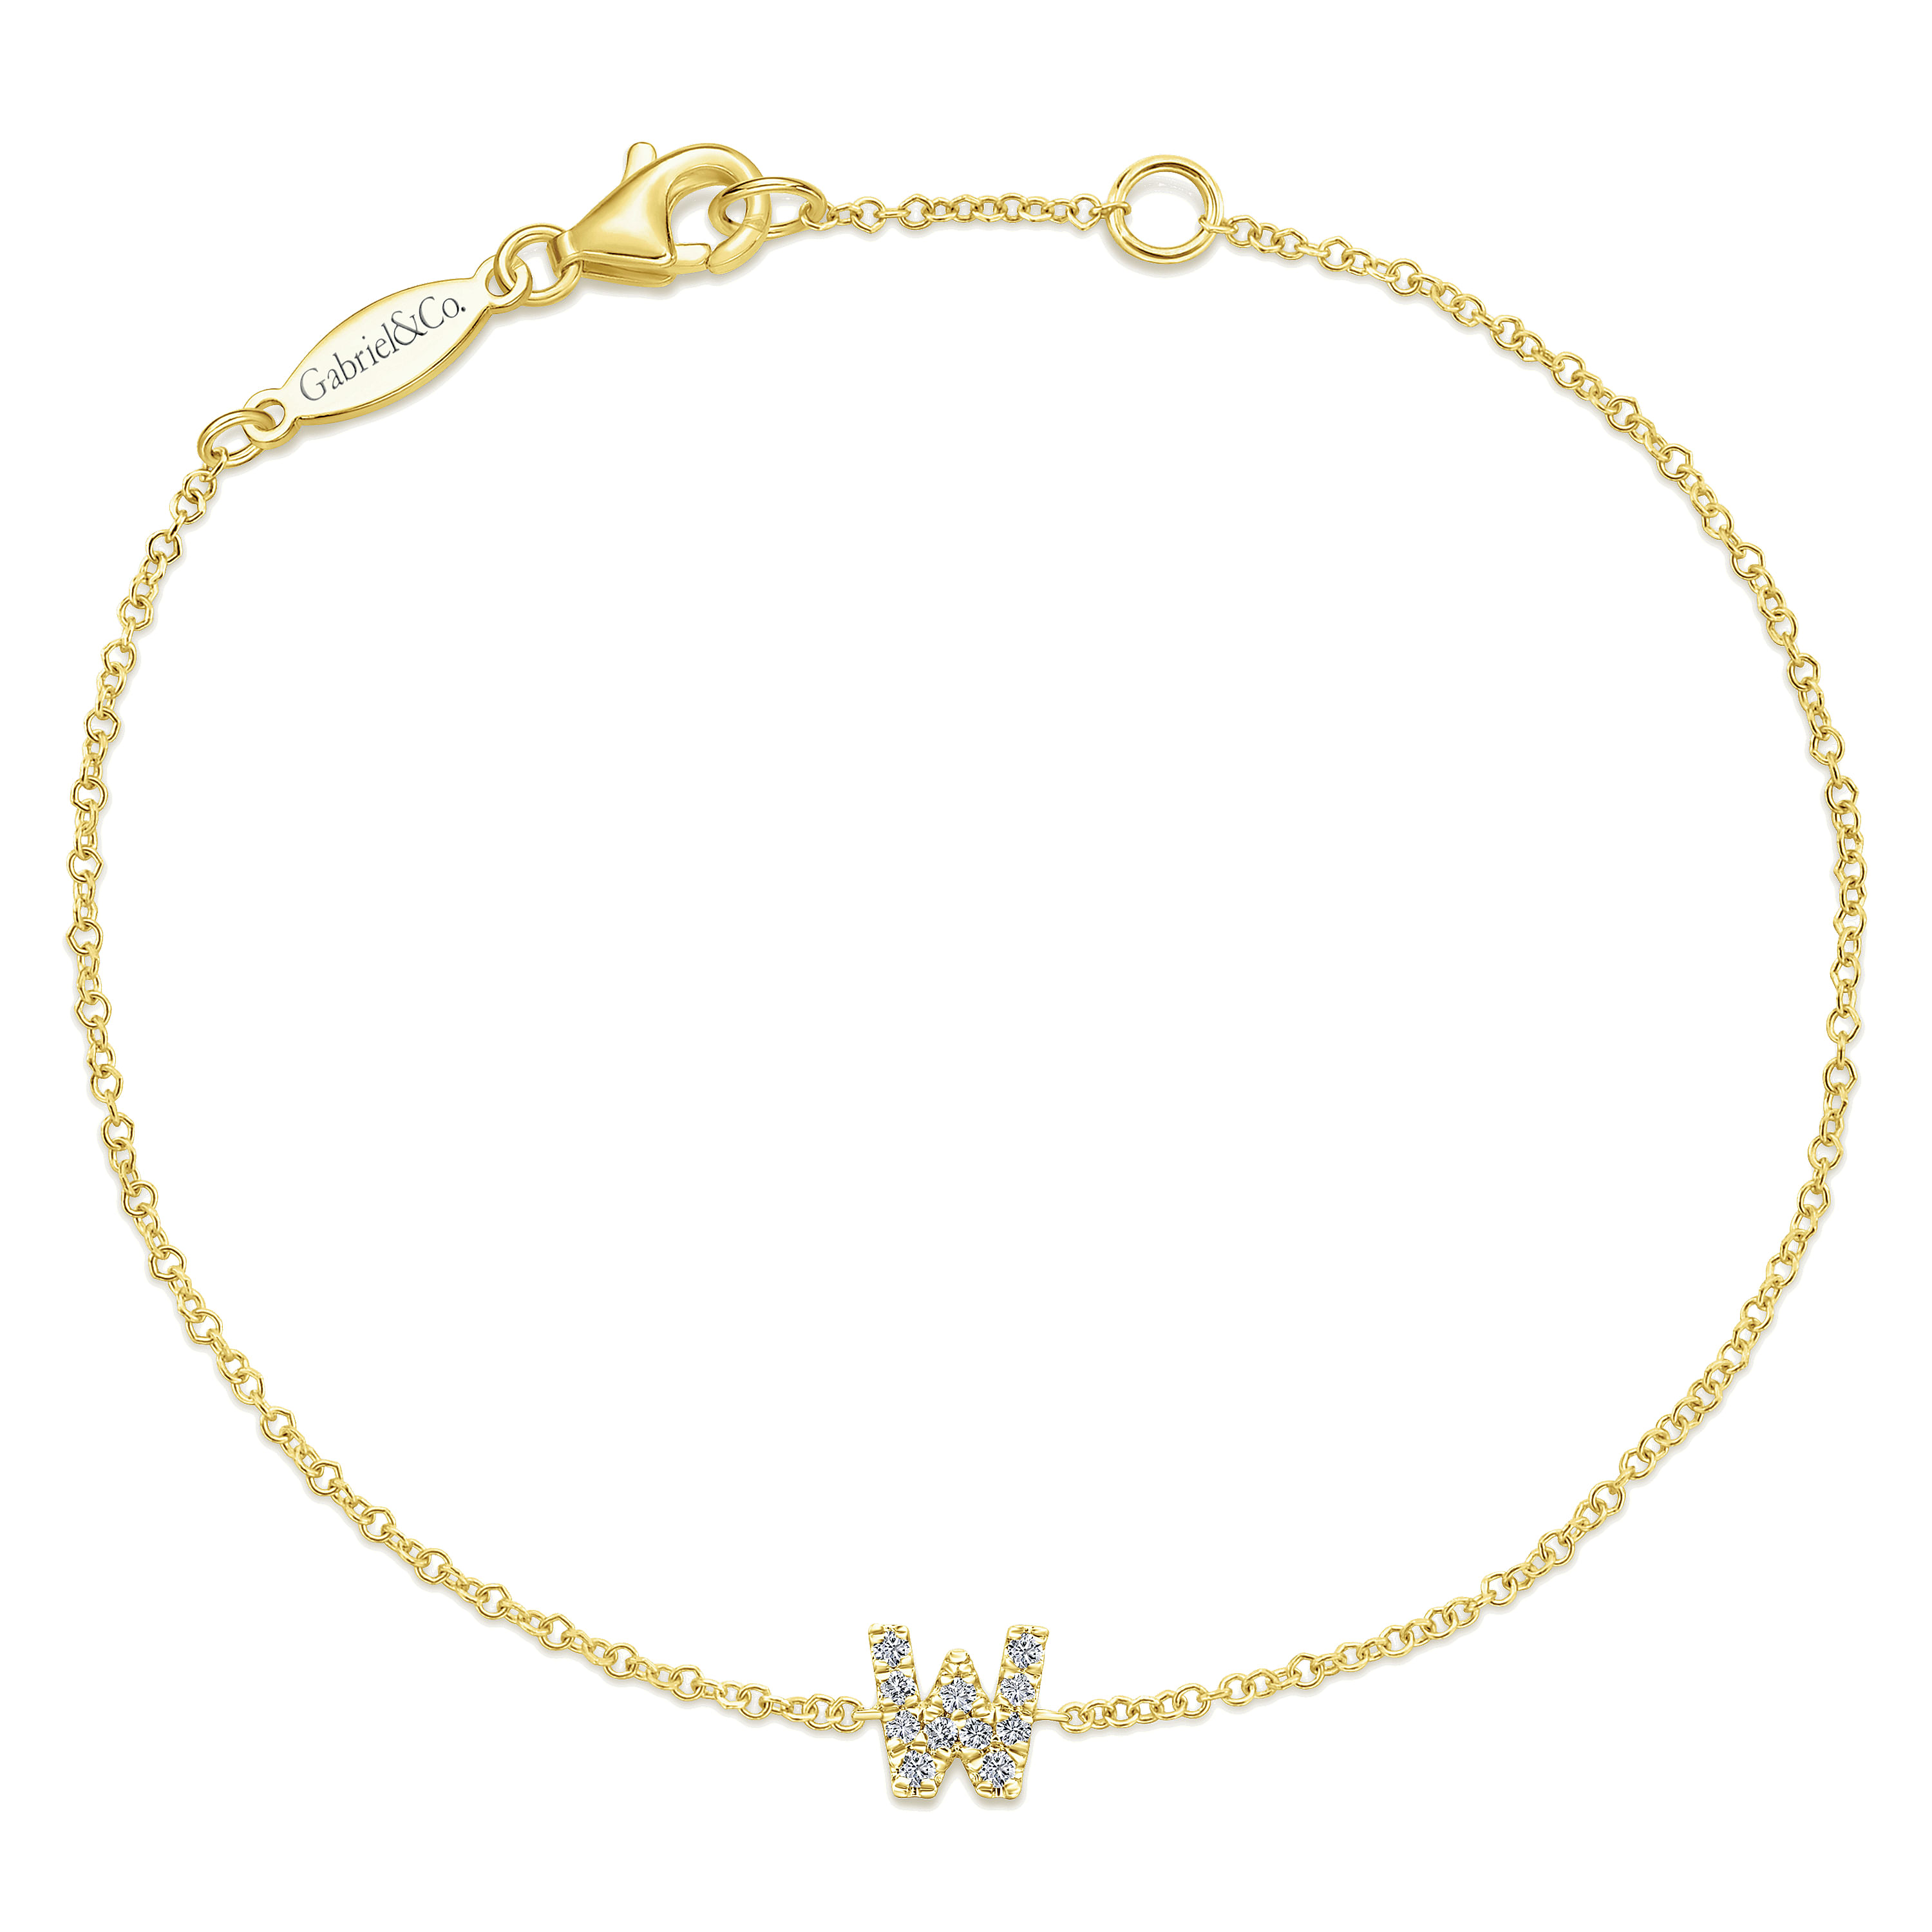 14K Yellow Gold Chain Bracelet with W Diamond Initial